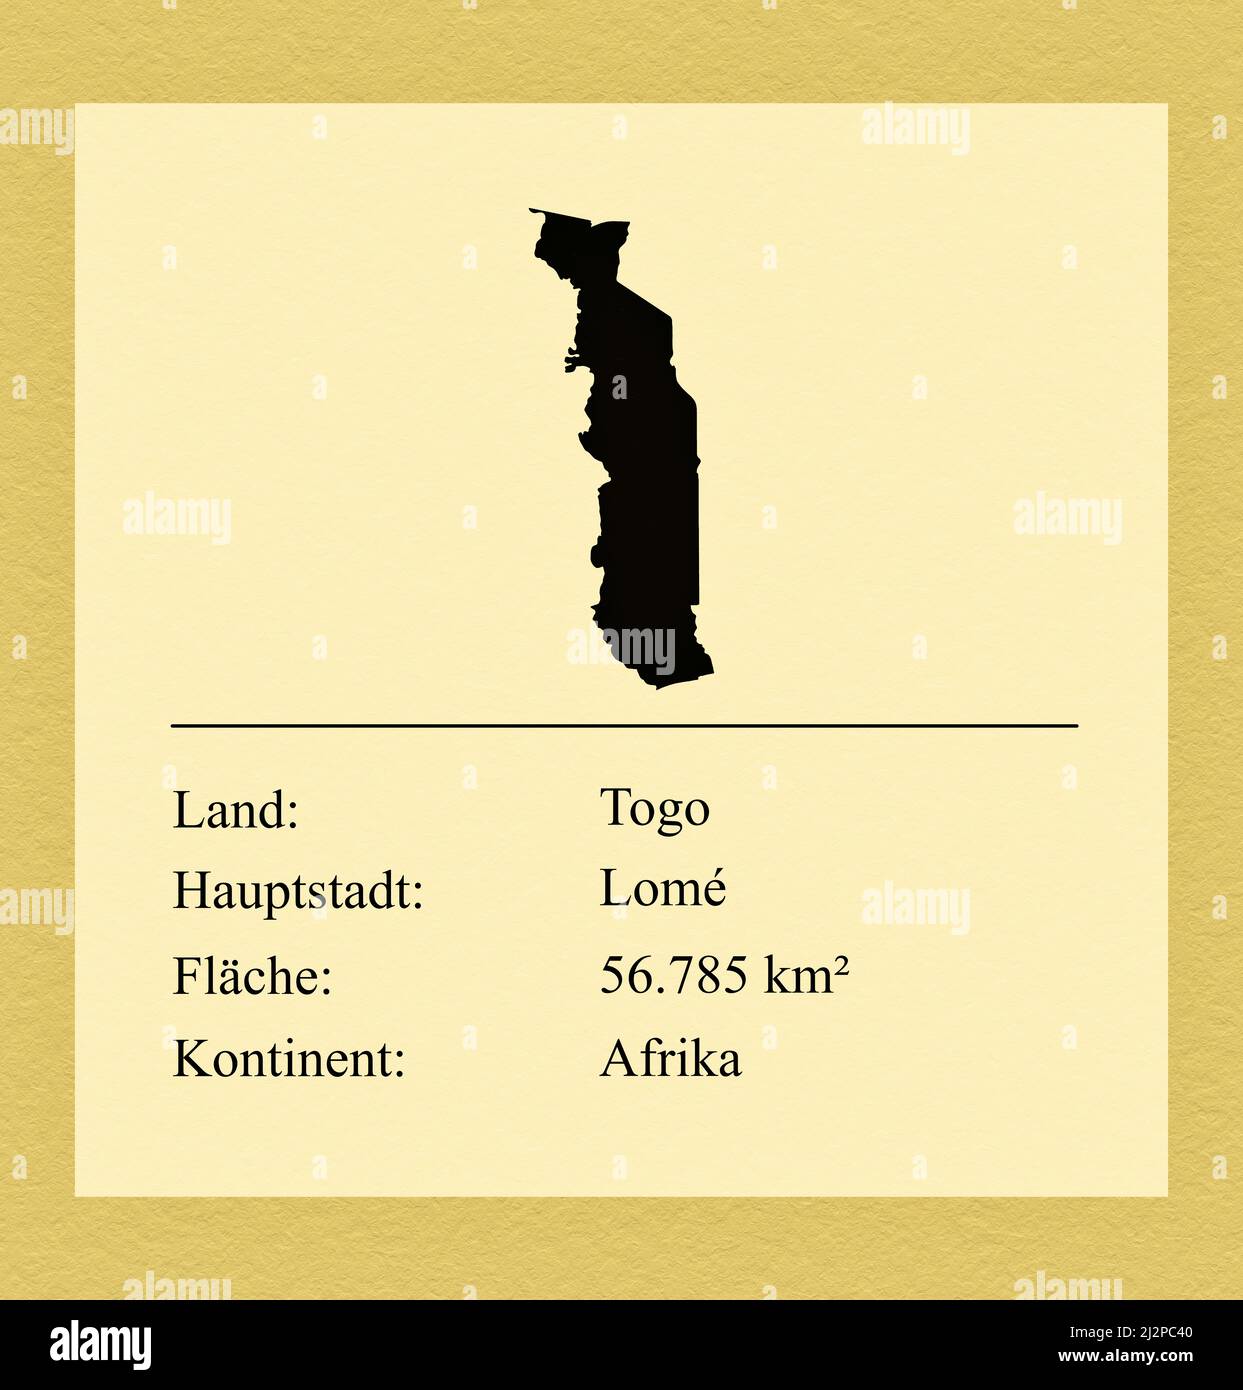 Umrisse des Landes Togo, darunter ein kleiner Steckbrief mit Ländernamen, Hauptstadt, Fläche und Kontinent Foto de stock